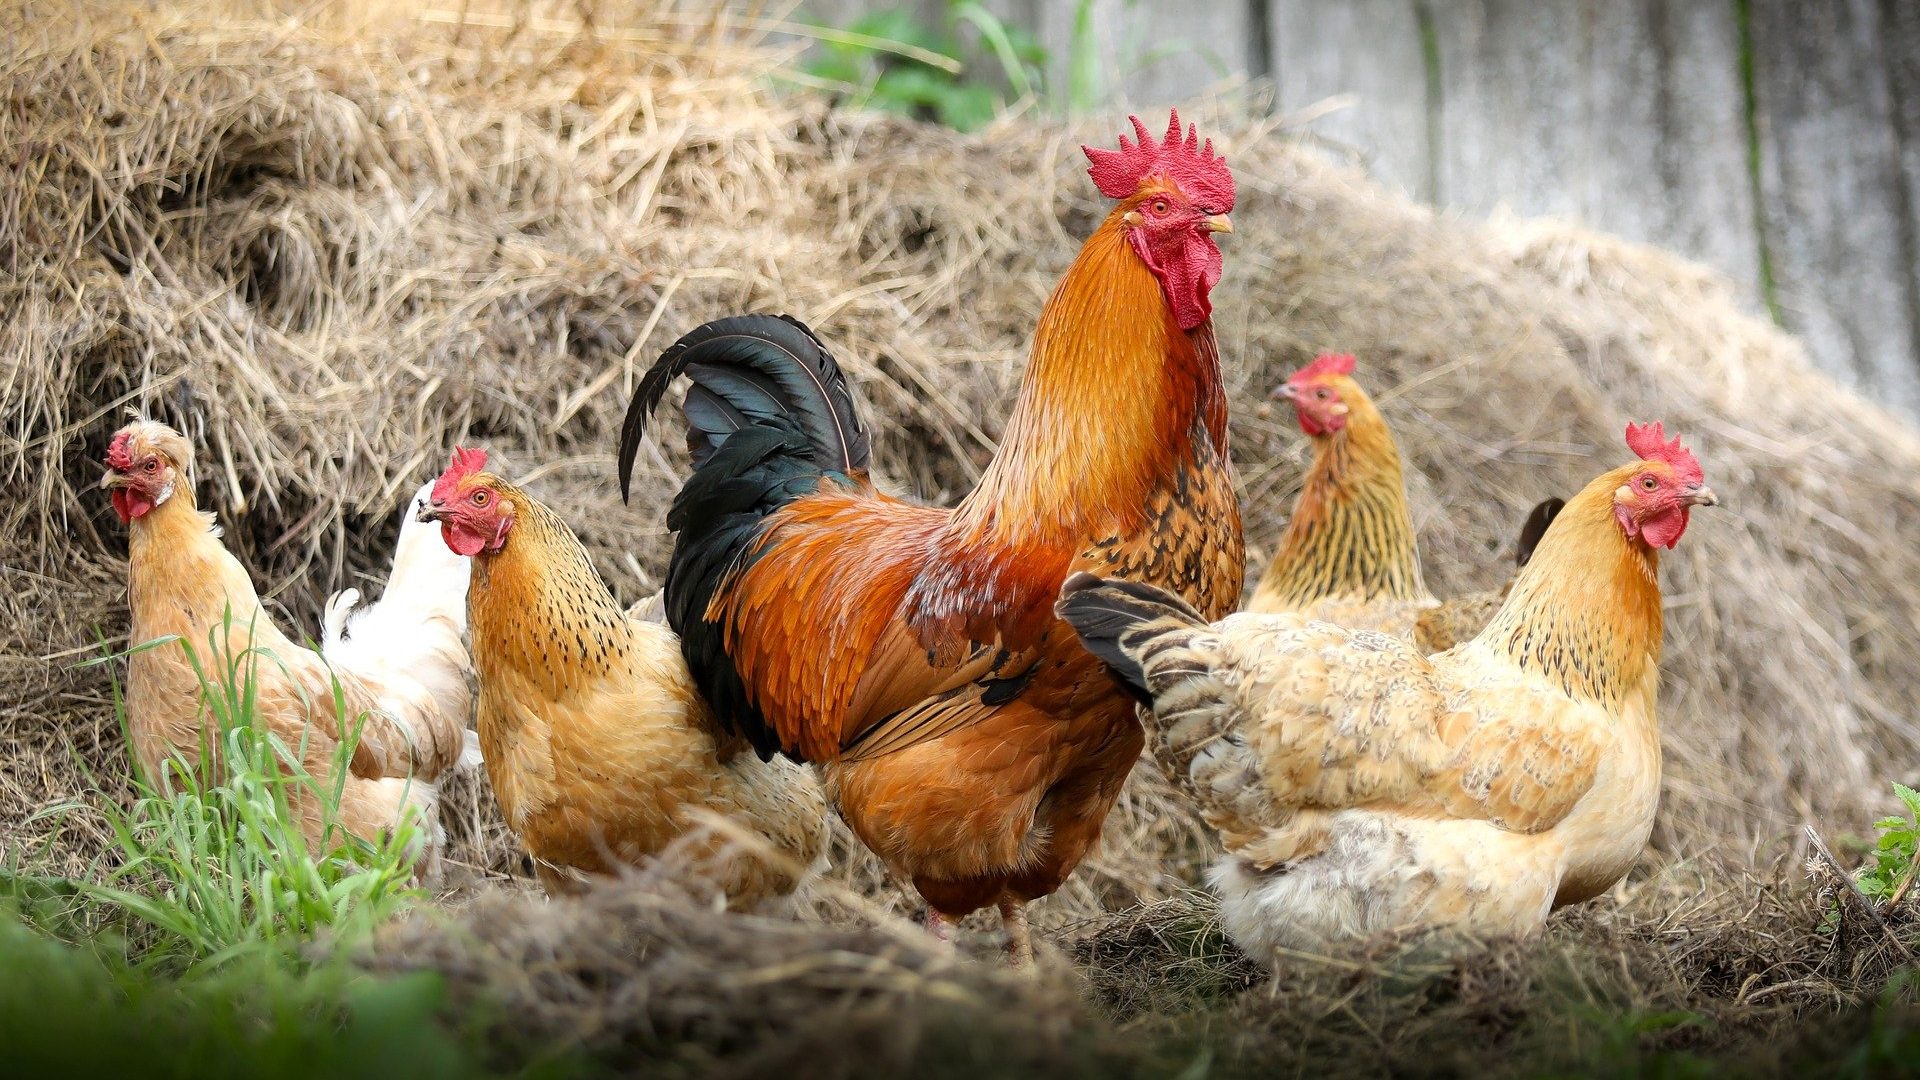 Udruženje za živinarstvo: Izvoz piletine u EU dobra šansa, pitanje je da li je spremna proizvodnja 1